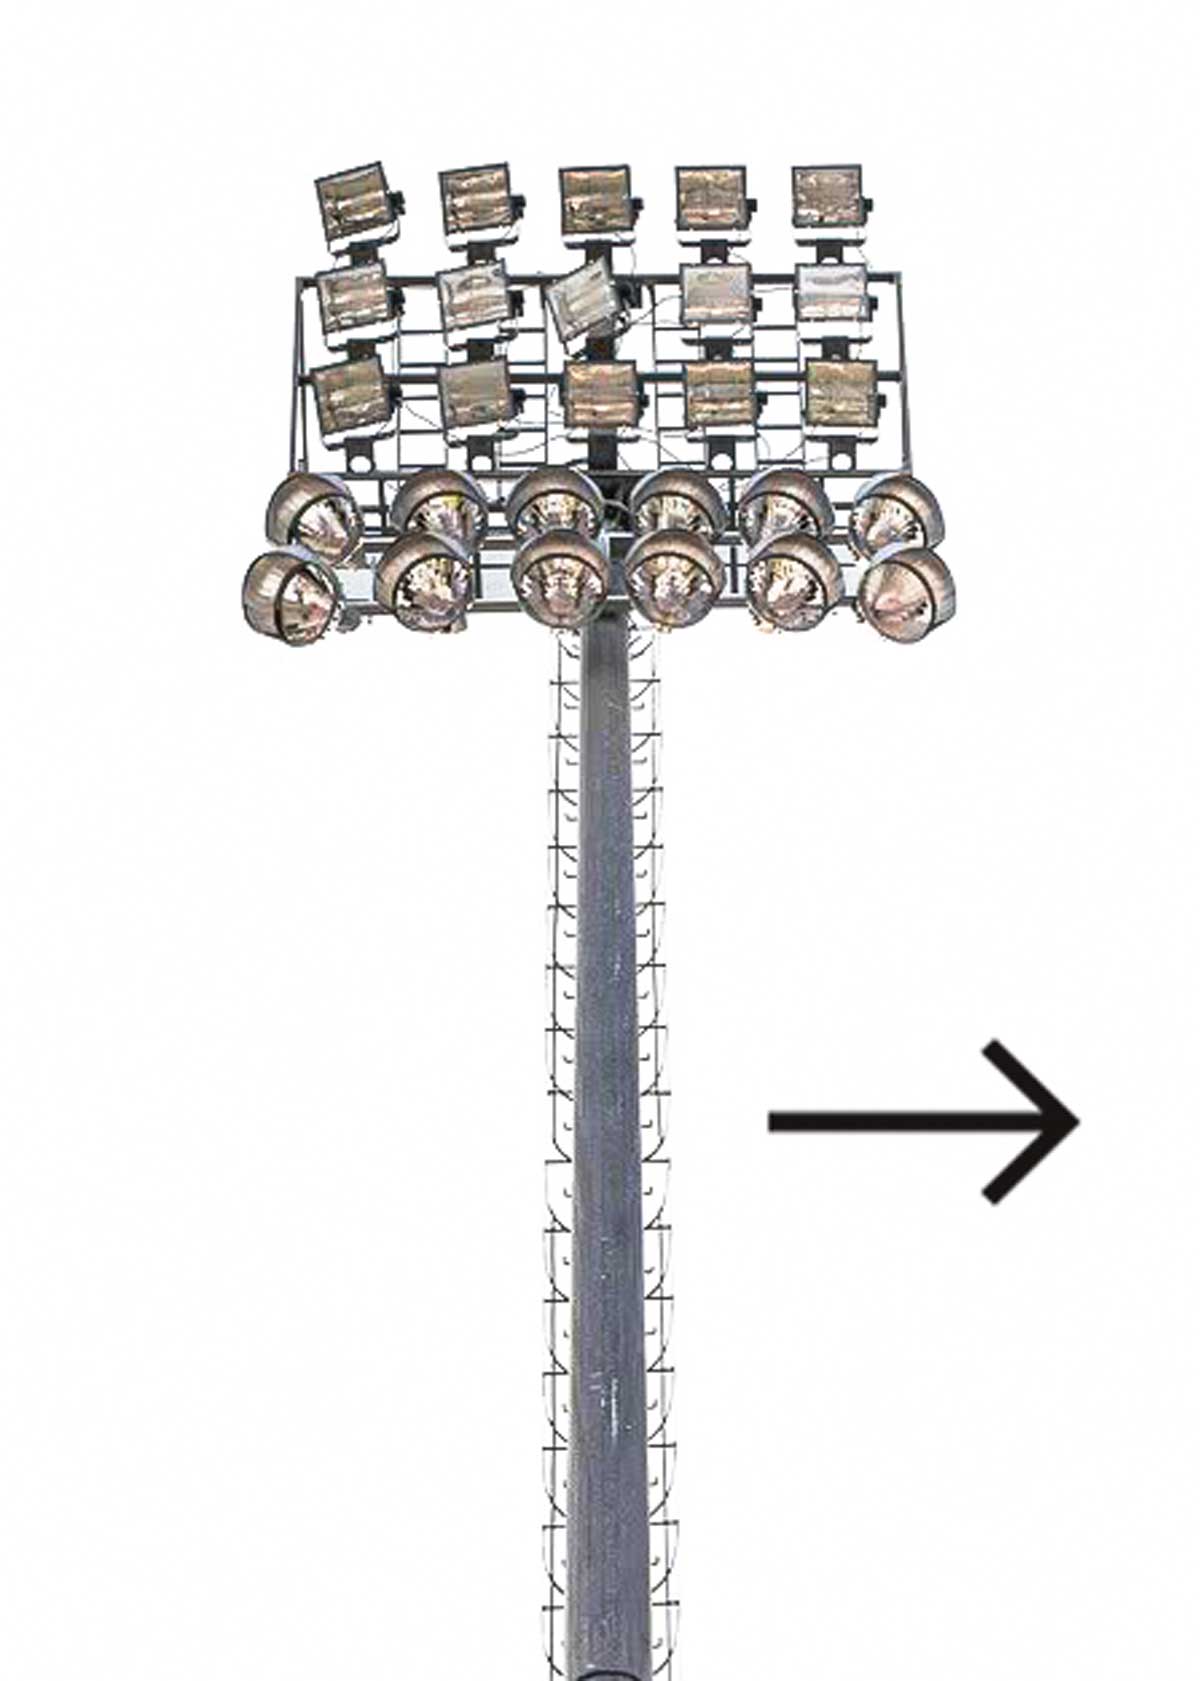 برج نوری استادیومی نورپردازی قدرتمند برای روشنایی فضای بزرگ